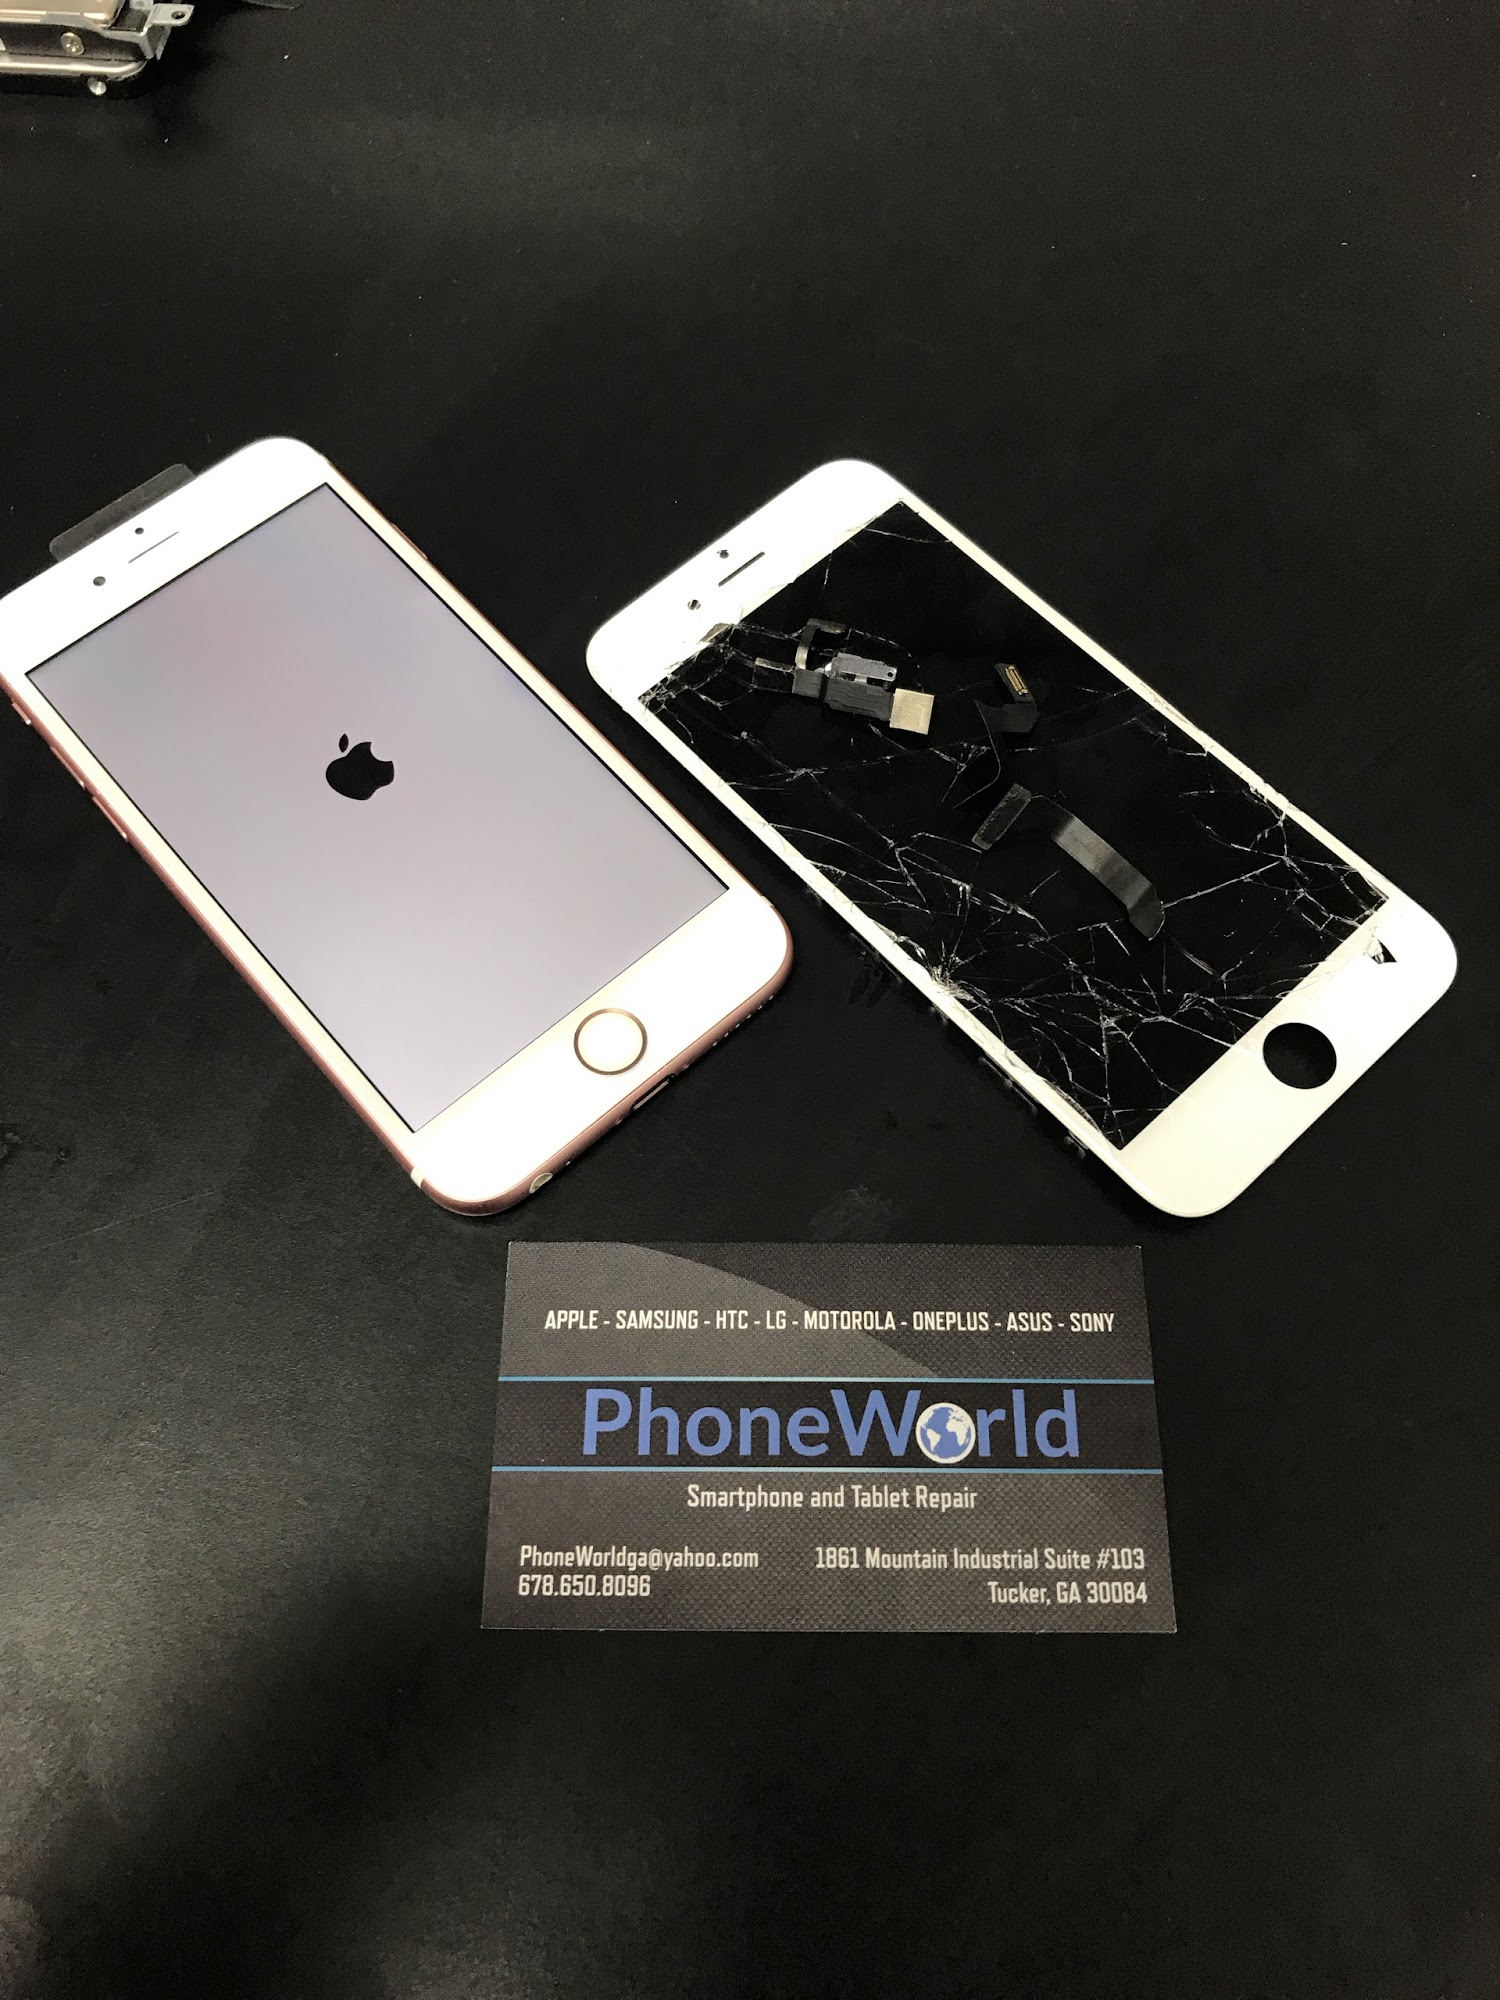 PhoneWorld Cell Phone Repair & Unlock